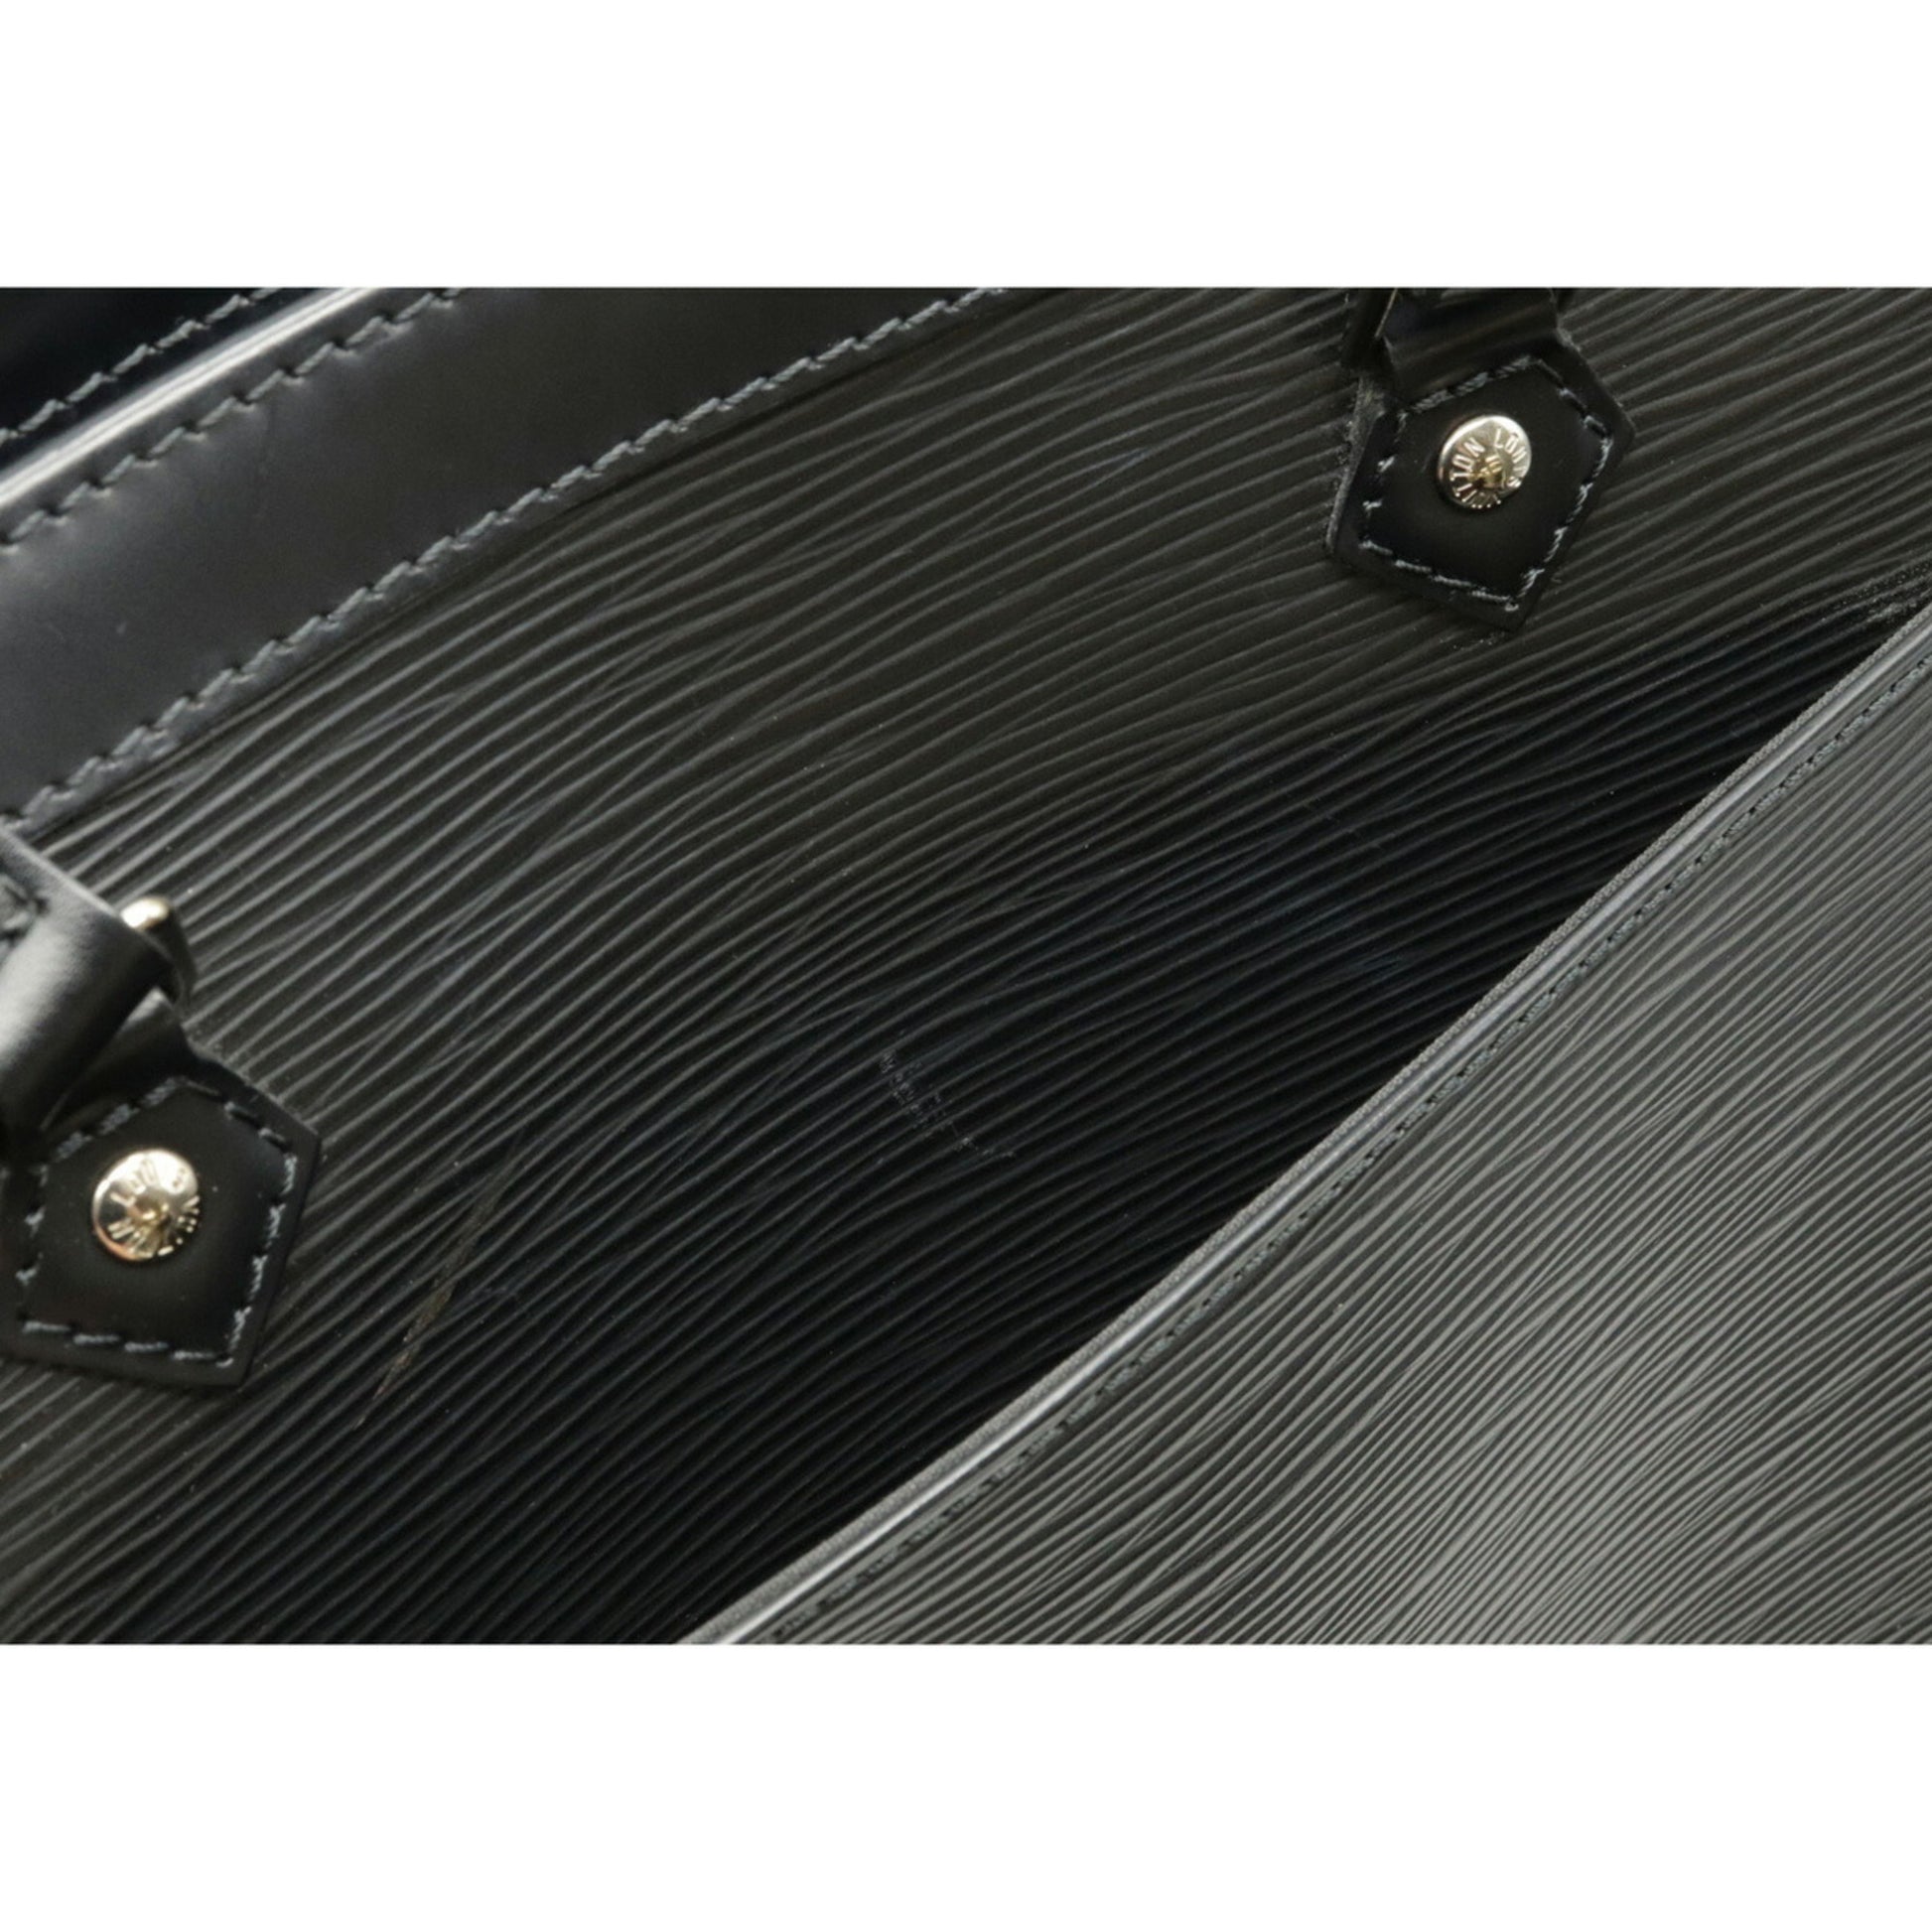 LOUIS VUITTON Shoulder Bag M59342 Madeleine GM Epi Leather Black Black –